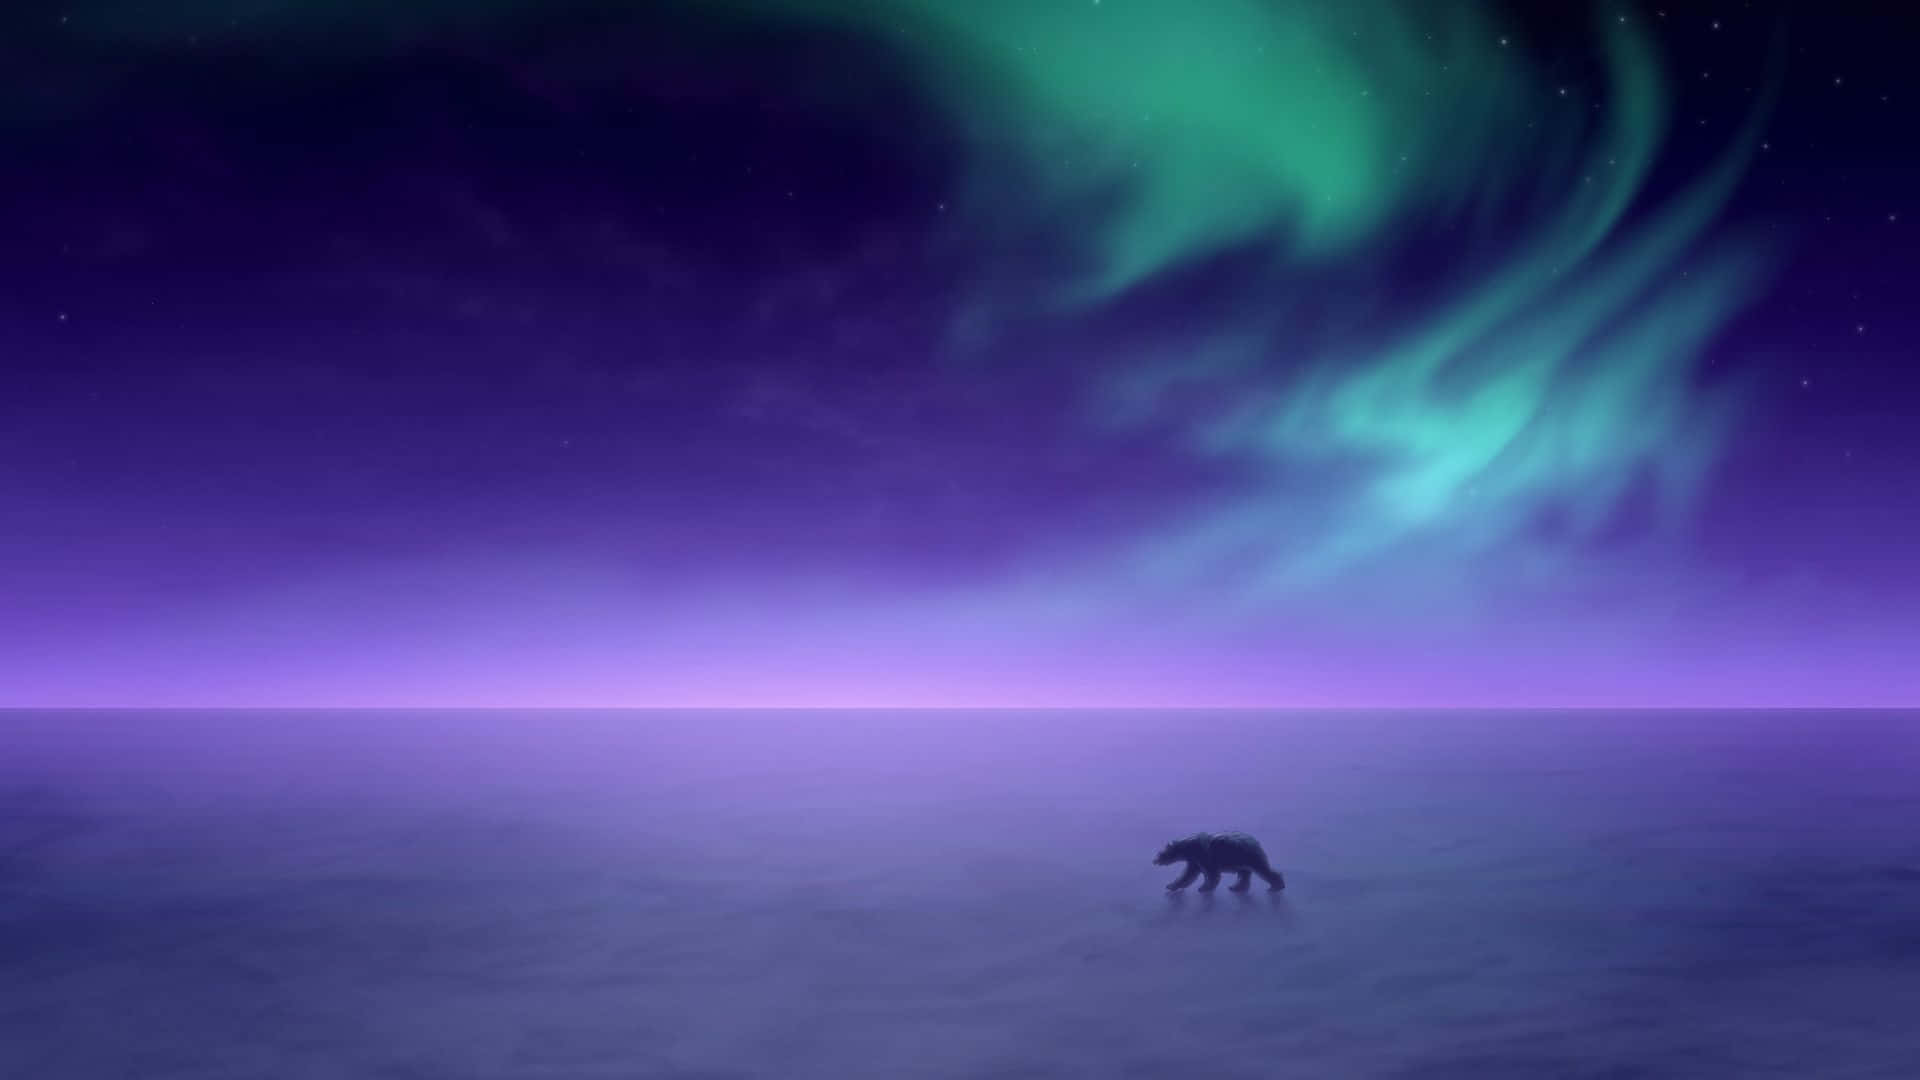 Imagende Un Oso Polar Caminando Entre Luces En El Polo Norte.